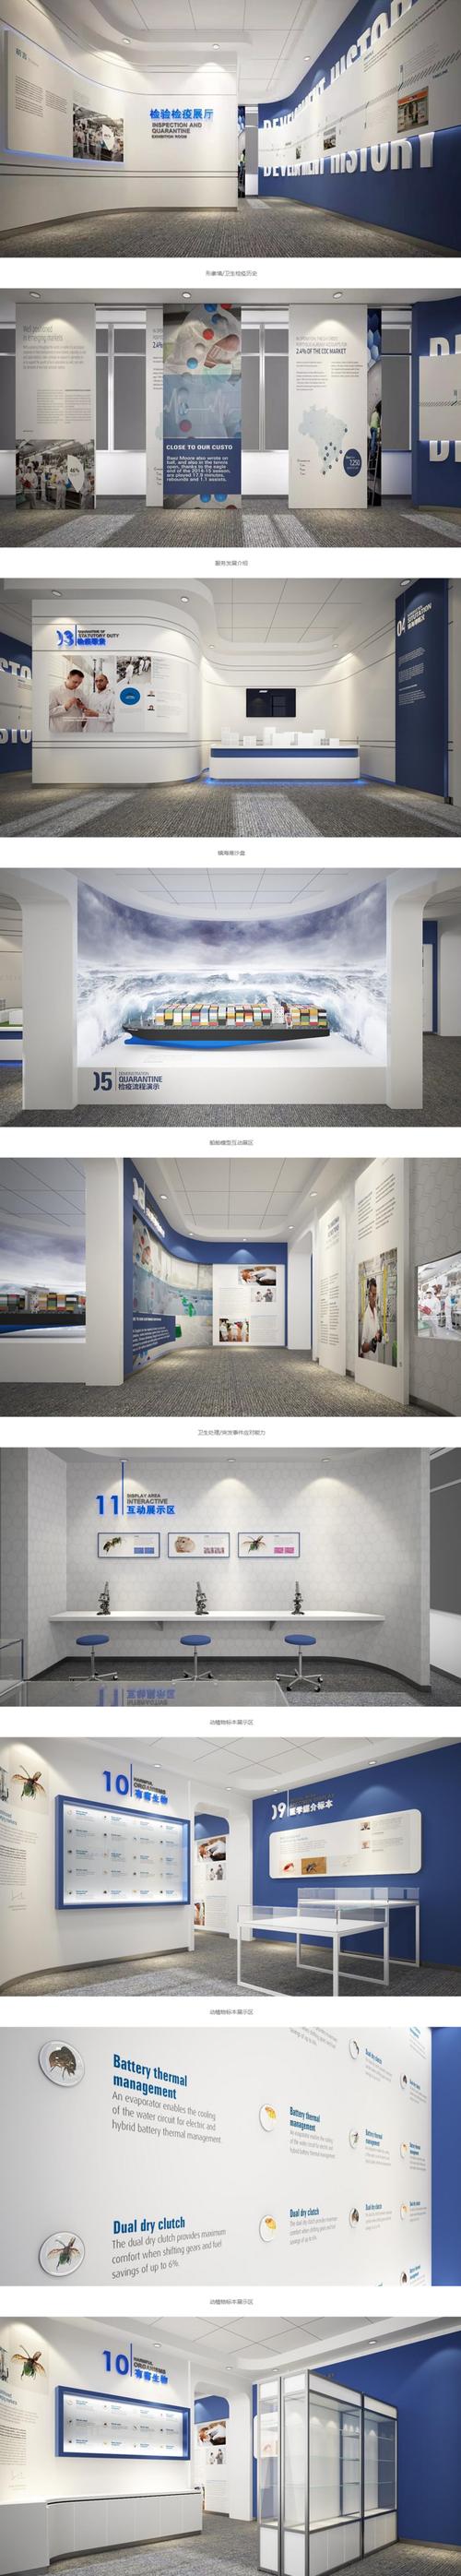 互动展厅3d展厅模型主题文化墙单位文化墙学校校园展示展厅设计效果图